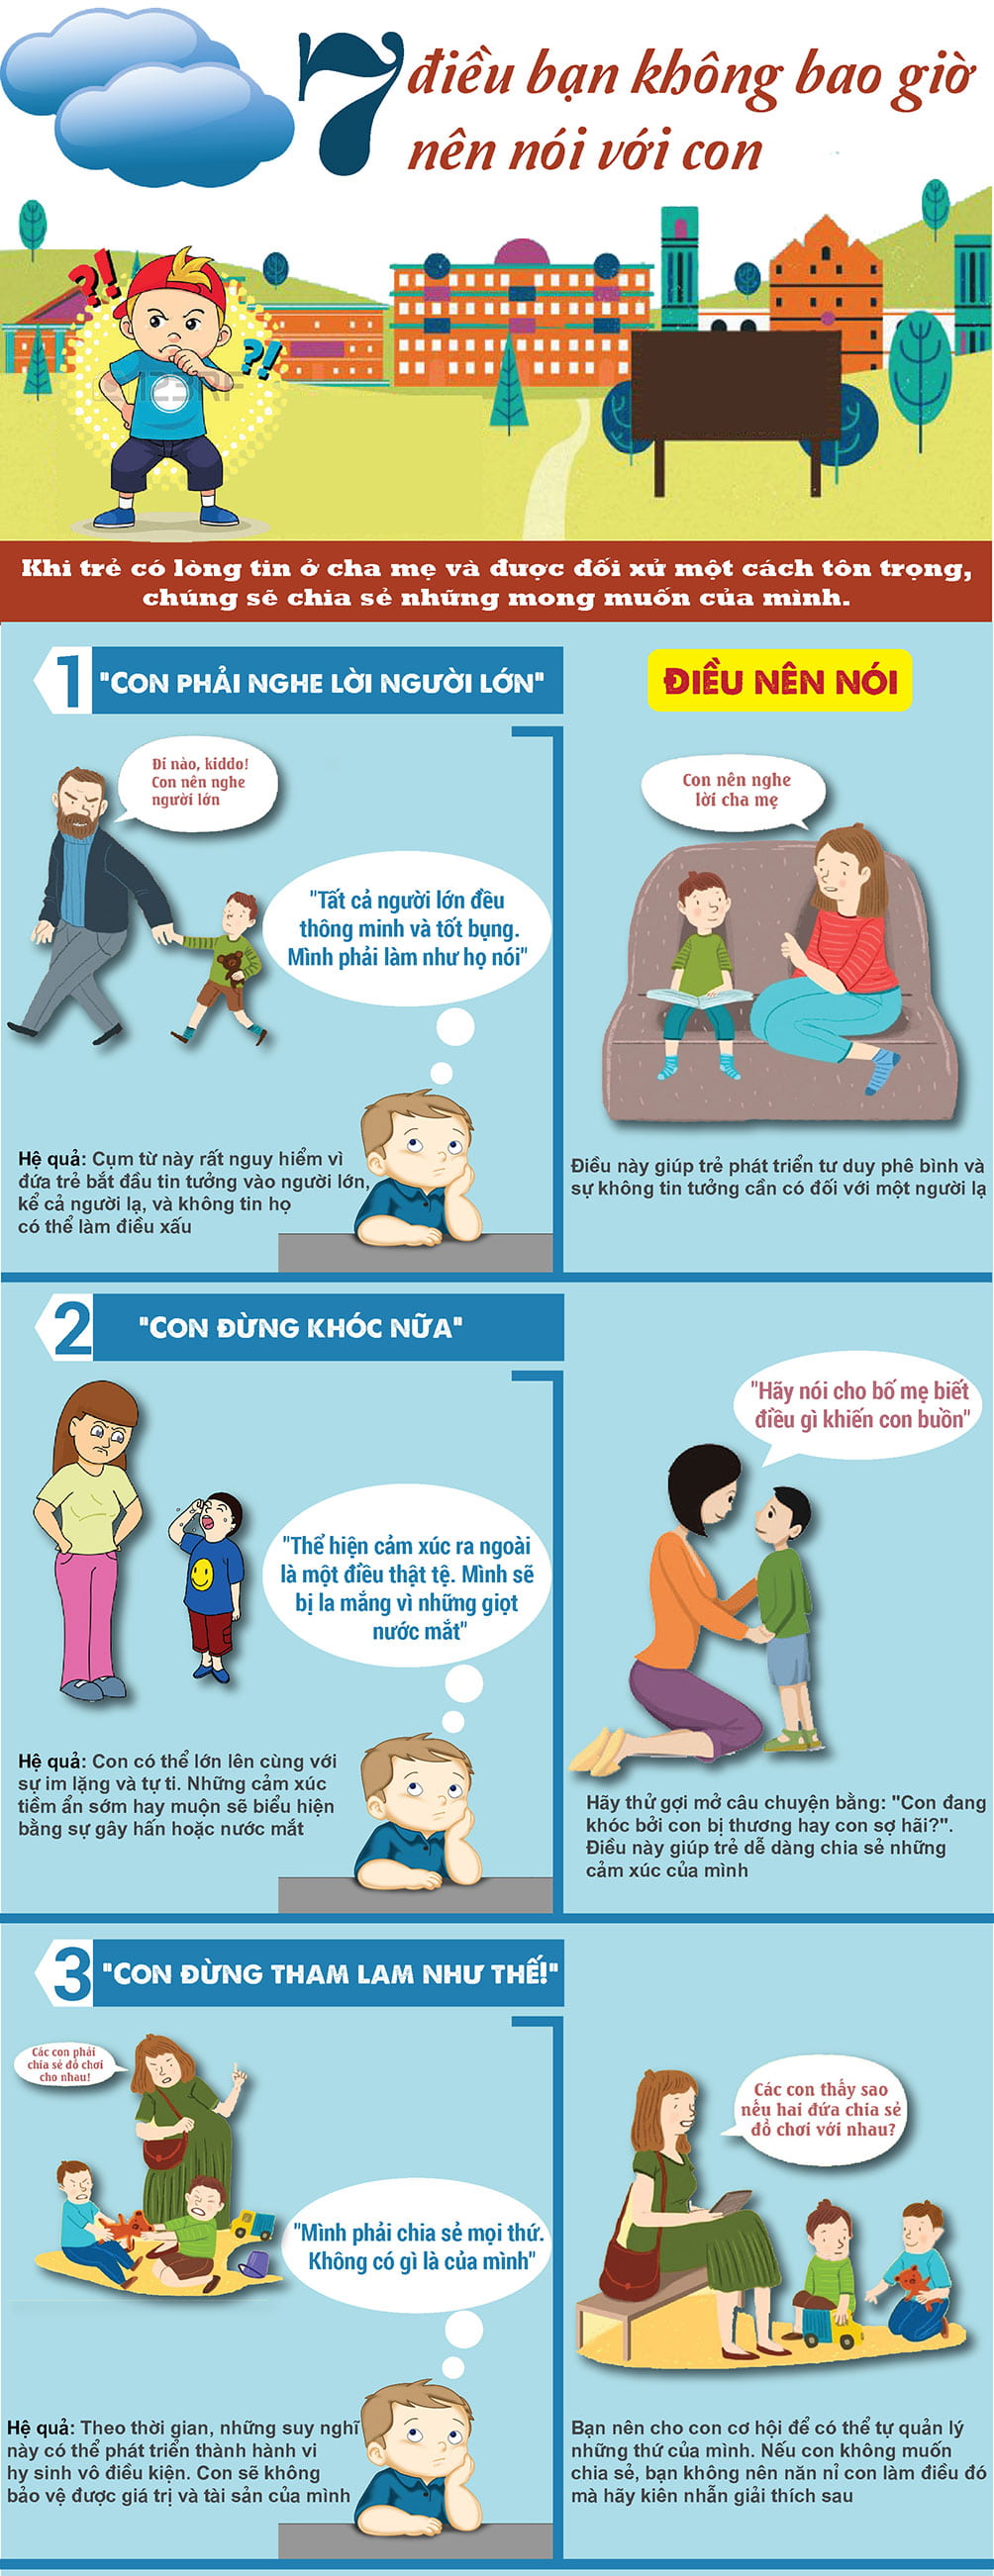 7 điều cha mẹ tuyệt đối tránh nói làm tổn thương trẻ 1